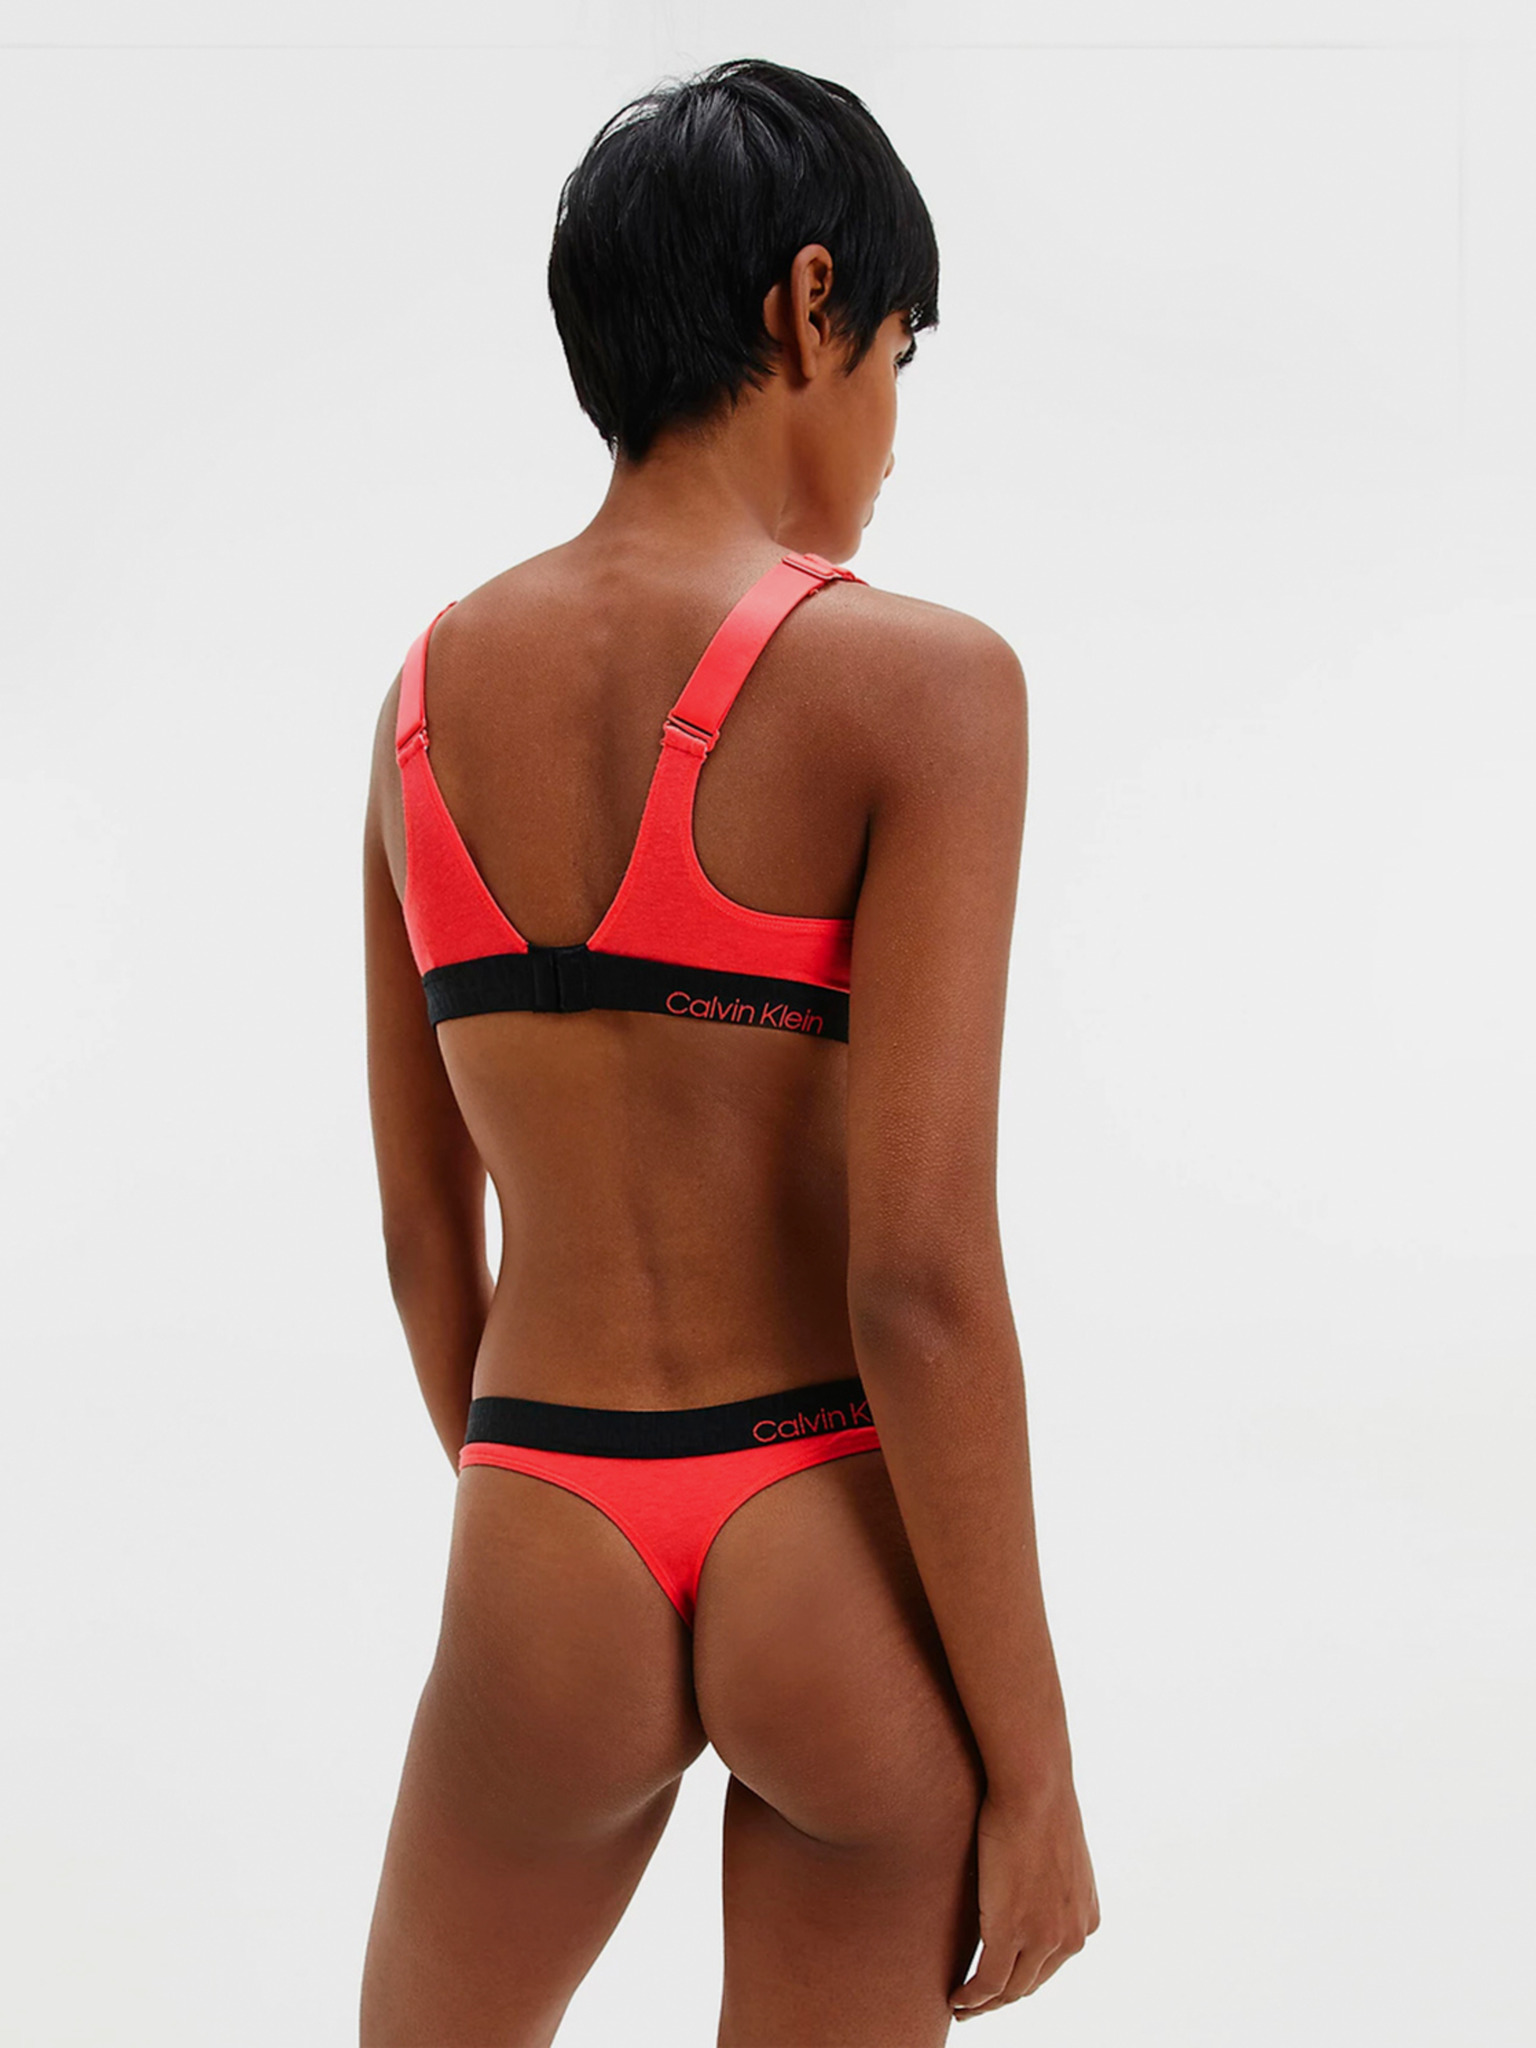 Calvin Klein Underwear - Unlined Triangle Bra Bibloo.com